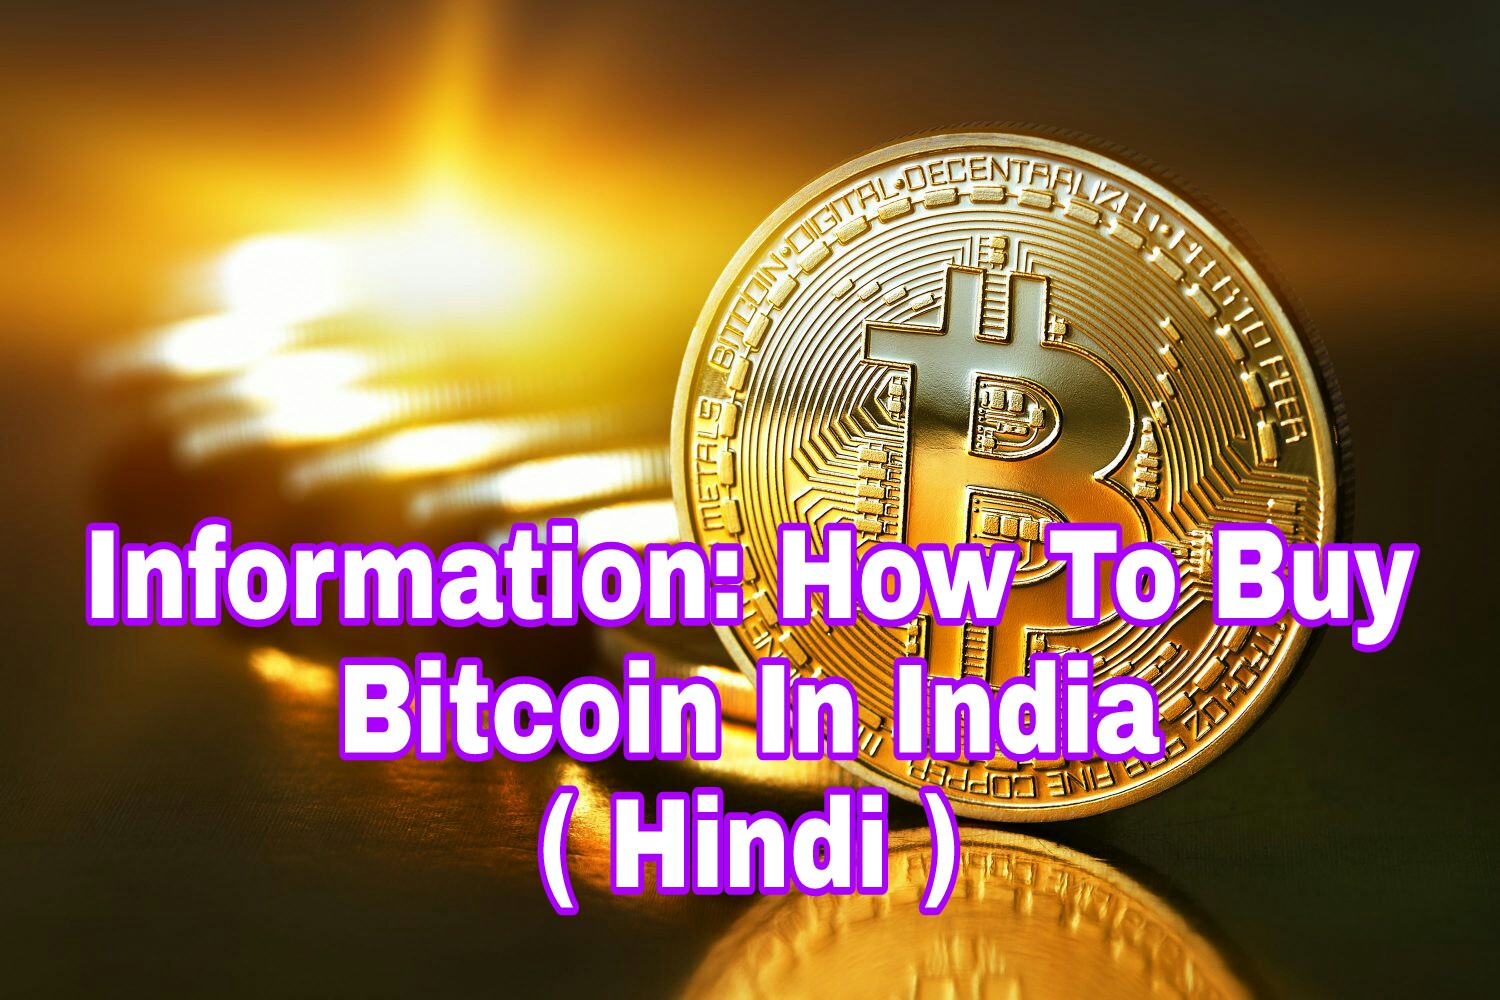 à¤µà¤° à¤š à¤…à¤² à¤® à¤¦ à¤° à¤­ à¤°à¤¤ à¤® à¤¬ à¤Ÿà¤• à¤‡à¤¨ à¤• à¤¸ - information about bitcoin in hindi how to buy bitcoin in india hindi à¤¬ à¤Ÿà¤• à¤‡à¤¨ à¤¸ à¤œ à¤¡ à¤œ à¤¨à¤• à¤° à¤­ à¤°à¤¤ à¤® à¤¬ à¤Ÿà¤• à¤‡à¤¨